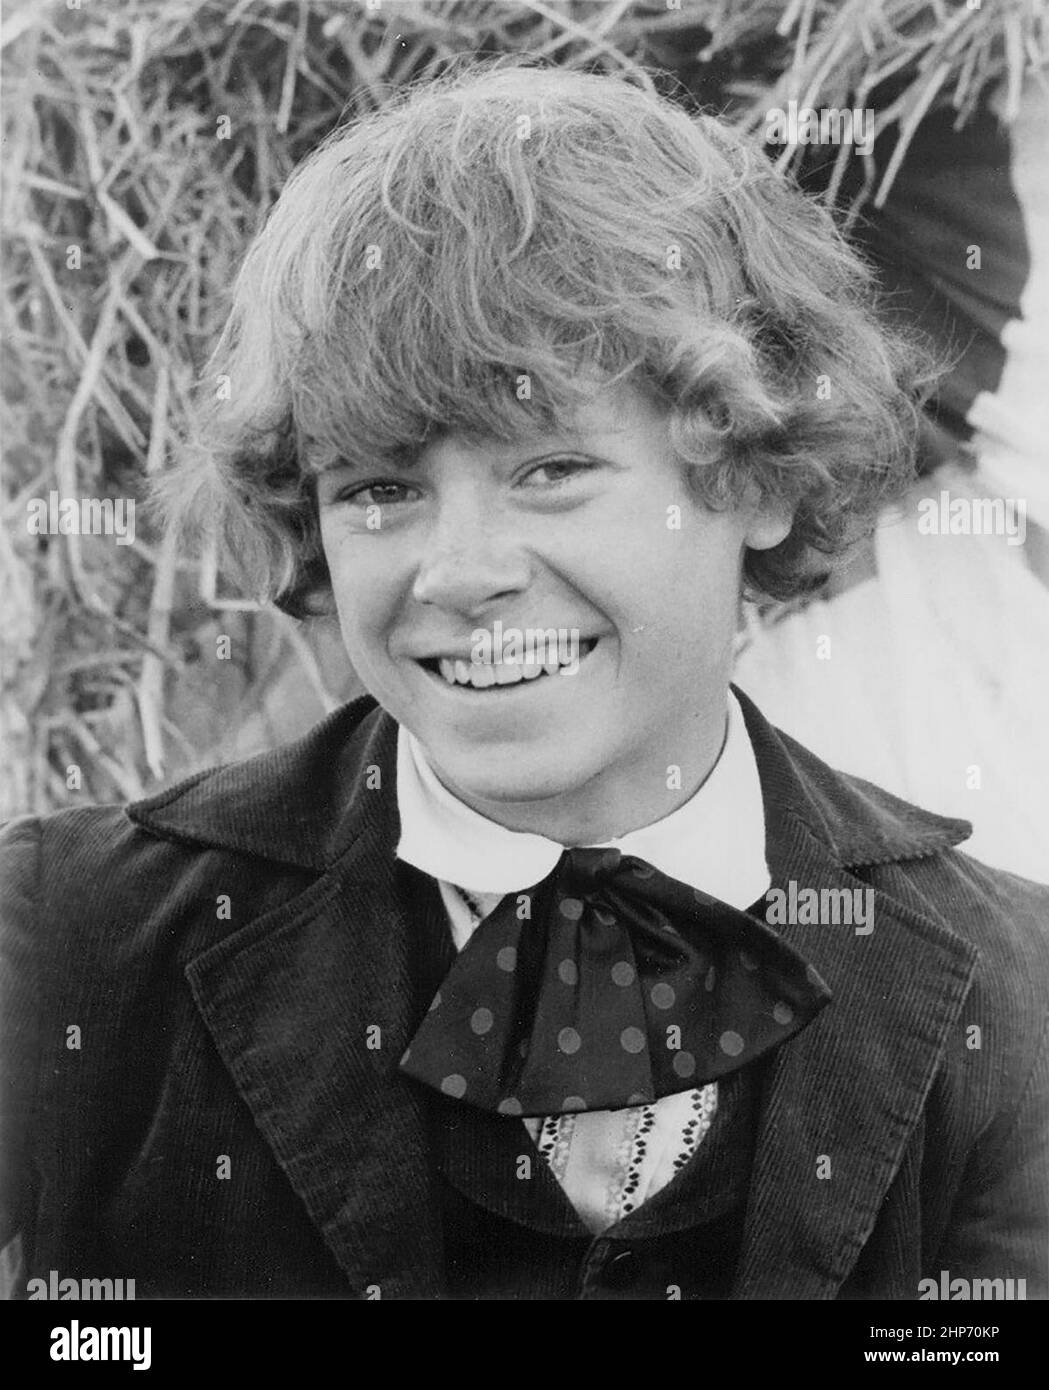 Photo publicitaire de l'acteur américain de l'adolescence, Jeff East faisant la promotion de son rôle de Huckleberry Finn dans les longs métrages d'United Artists Tom Sawyer (1973) et Huckleberry Finn (1974) Banque D'Images